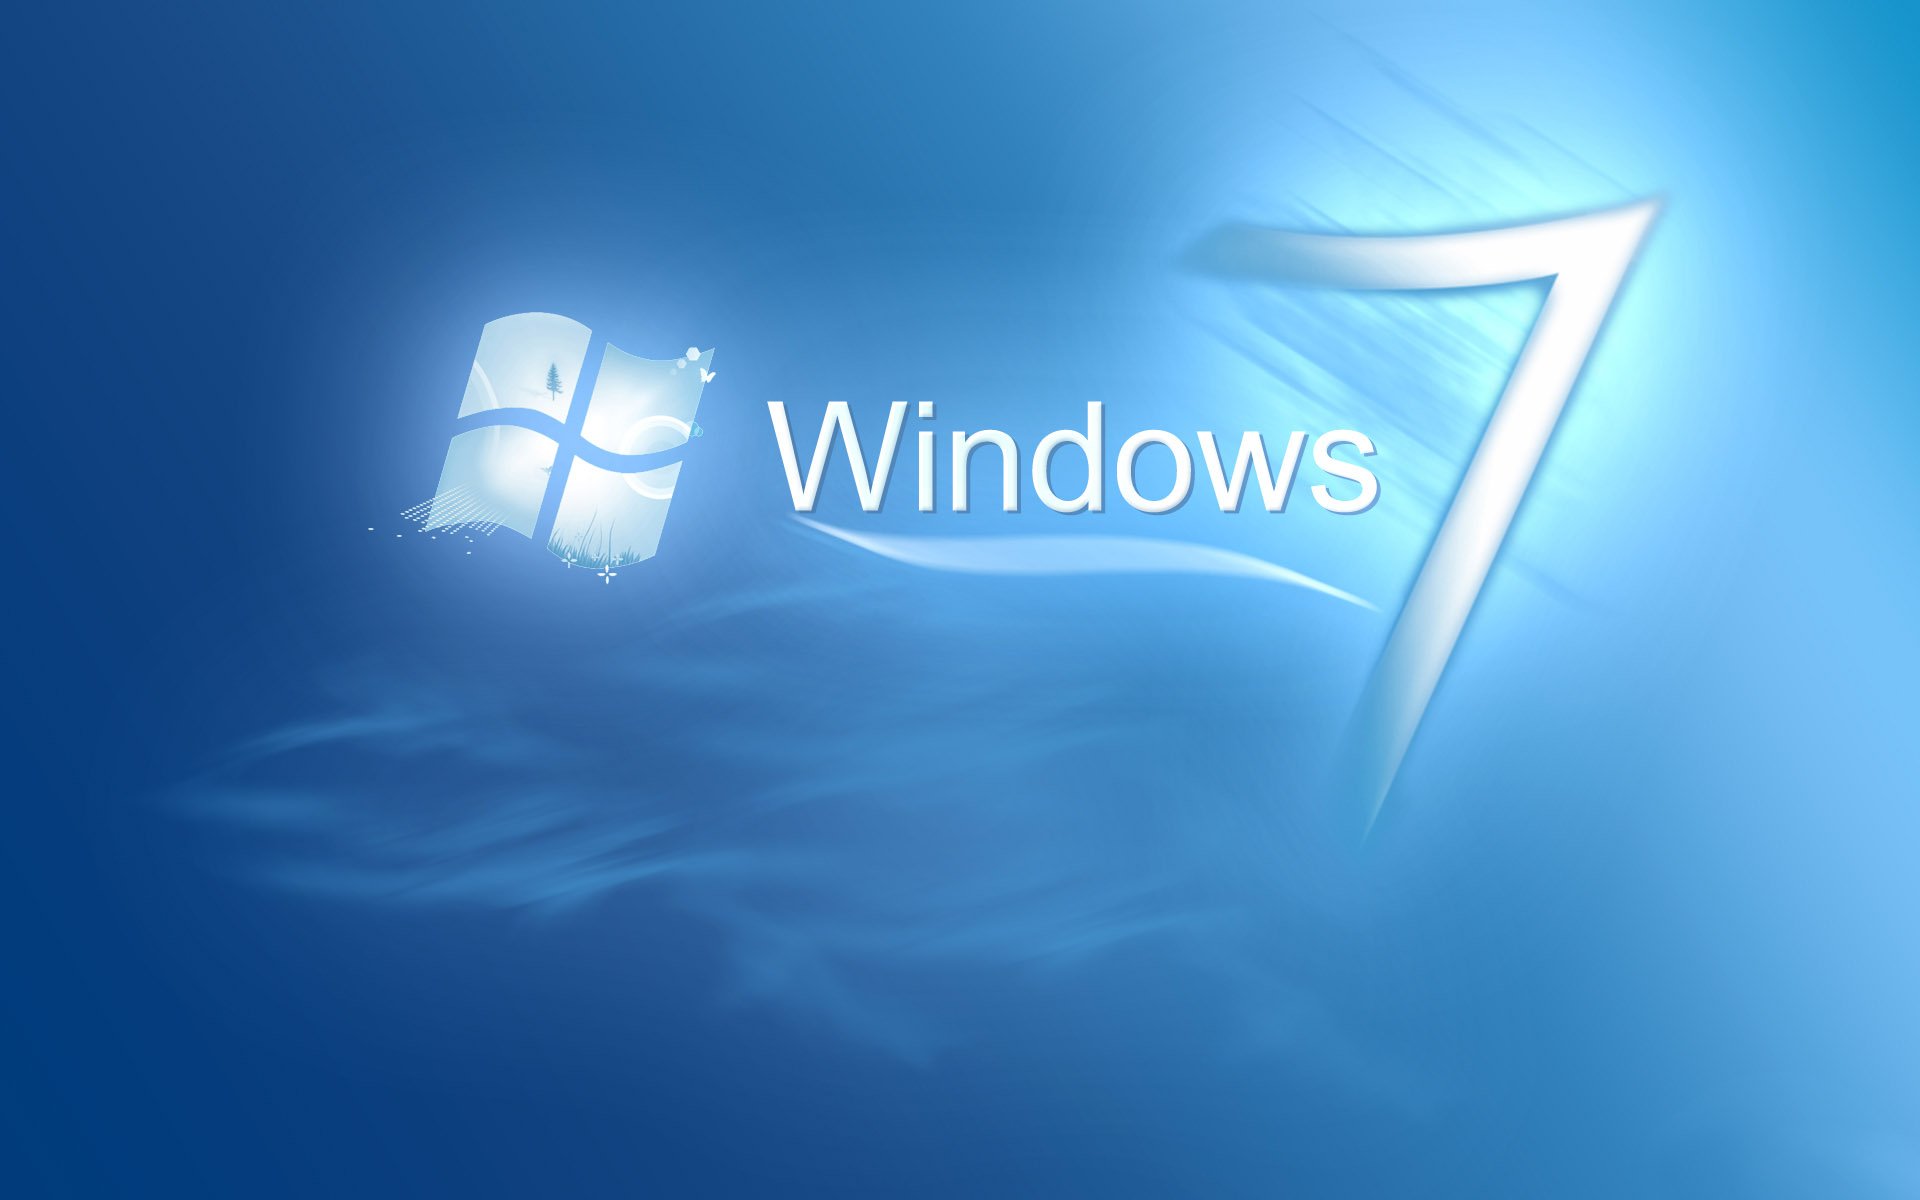 Windows семерка. Виндовс. Виндовс 7. Обои Windows 7. Картинки Windows 7.